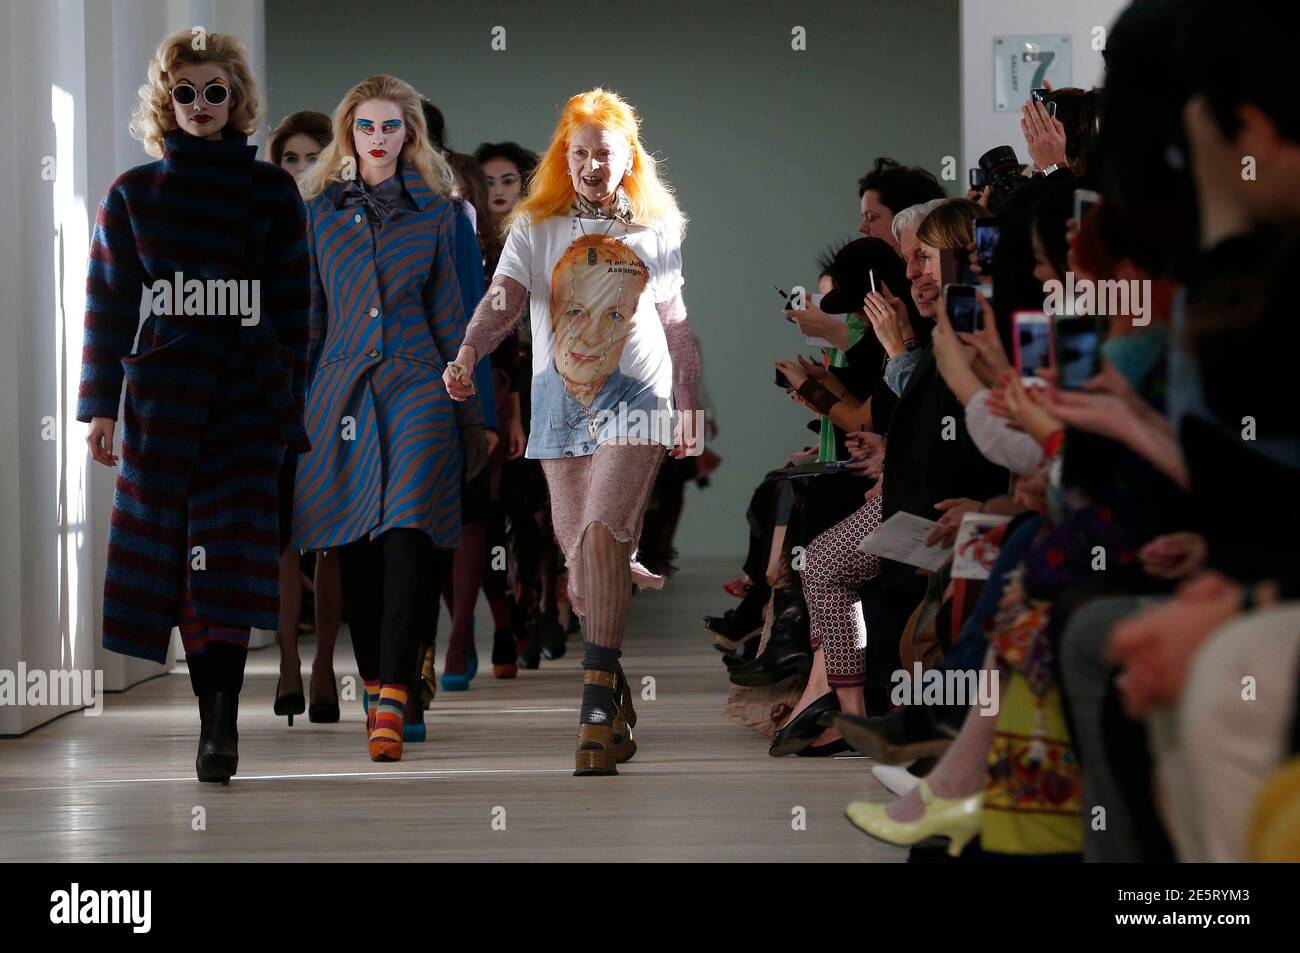 Vivienne Westwood begleitet ihre Models auf dem Laufsteg nach der Präsentation der Vivienne Westwood Red Label Herbst/Winter 2013 Kollektion während der London Fashion Week, 17. Februar 2013. REUTERS/Suzanne Plunkett (GROSSBRITANNIEN - Tags: MODE) Stockfoto